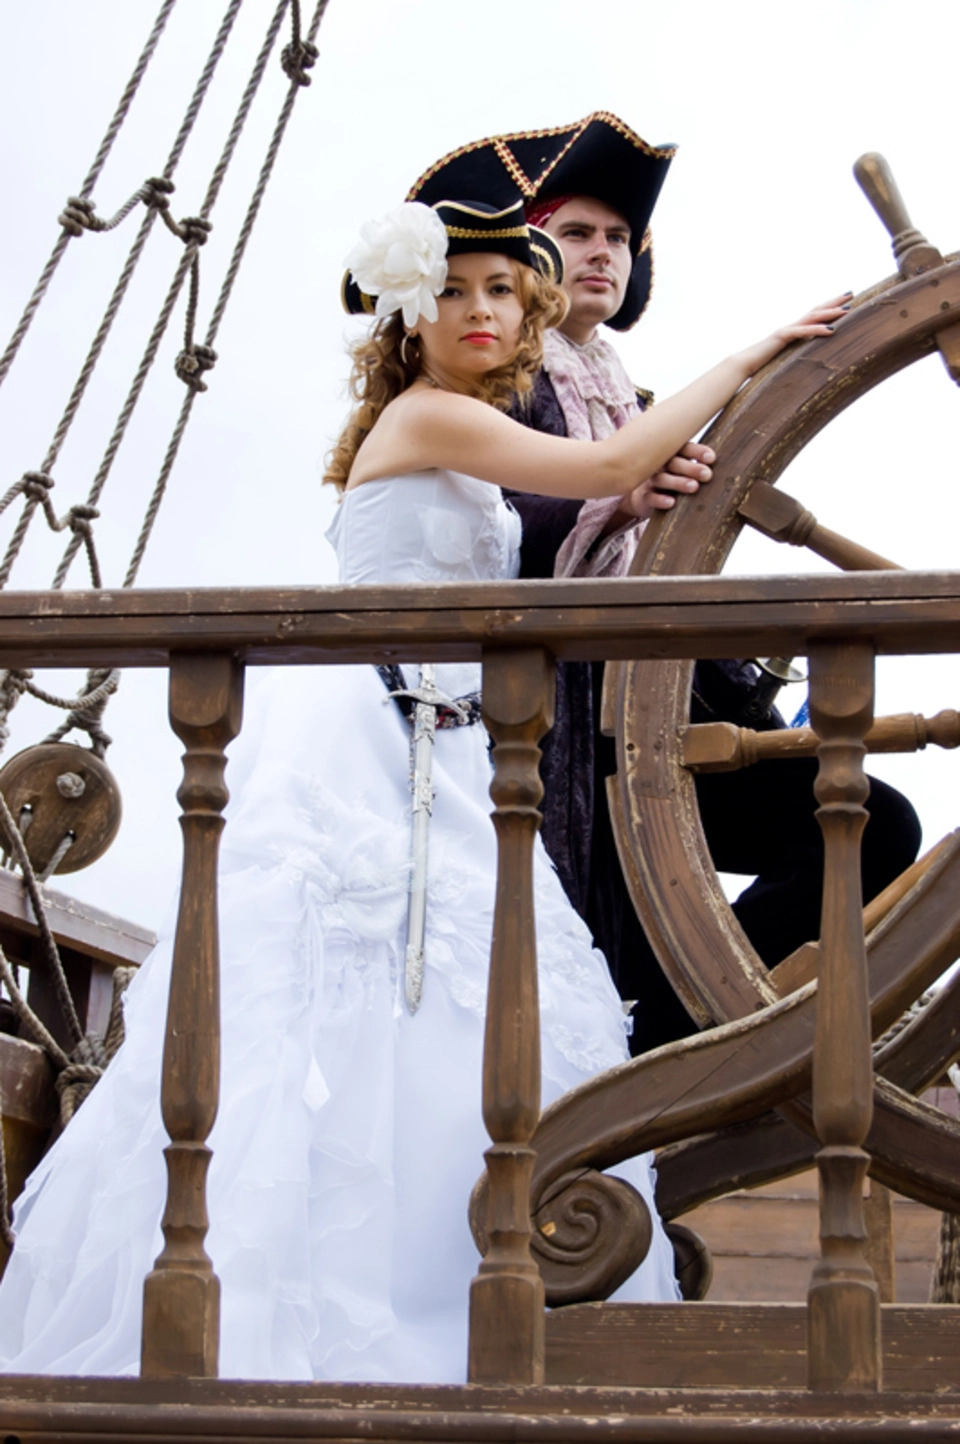 Пиратская свадьба